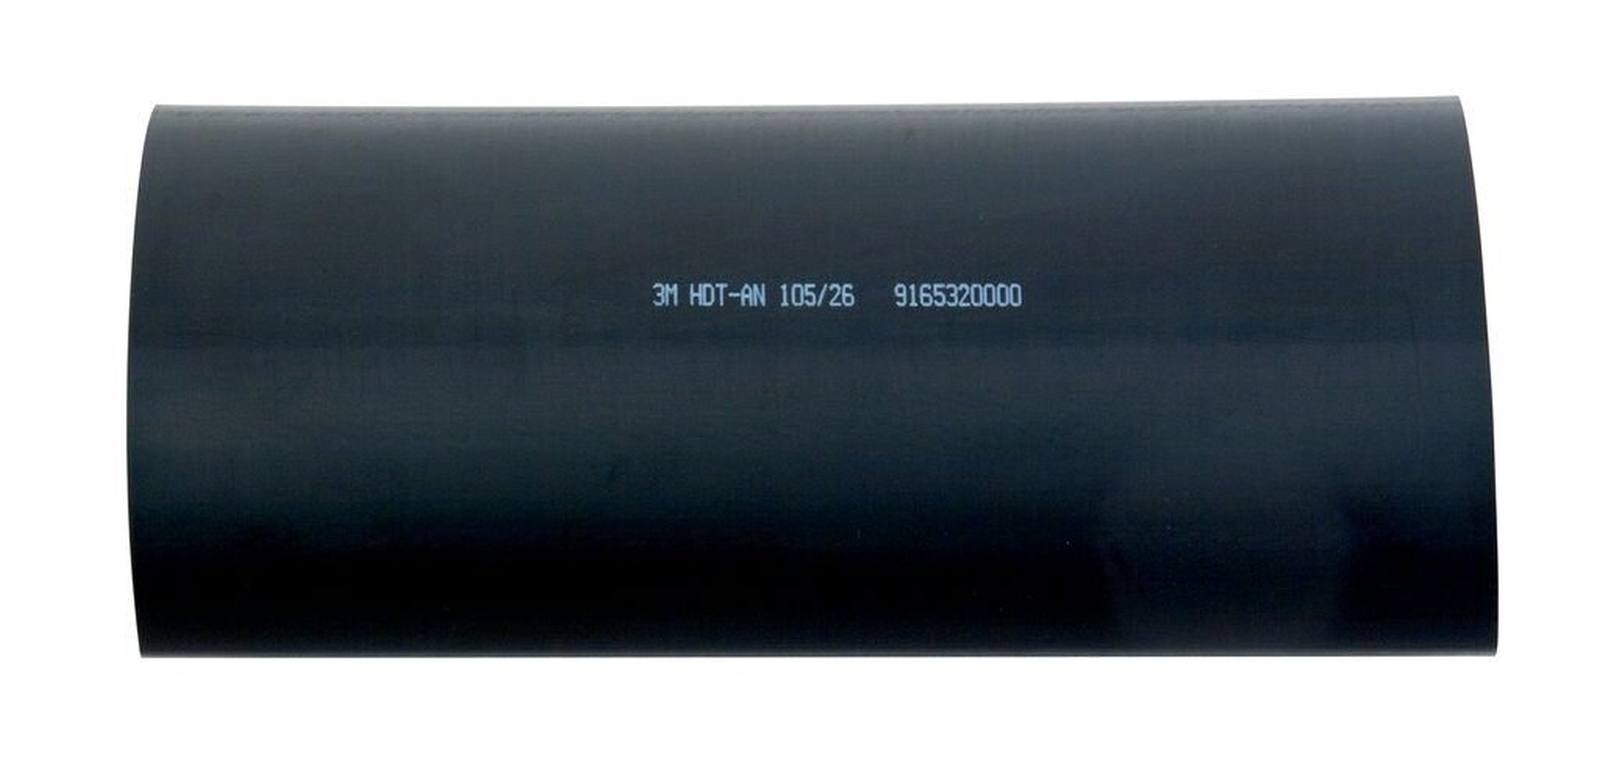  3M HDT-AN Paksuseinäinen lämpökutisteputki liimalla, musta, 105/26 mm, 1 m